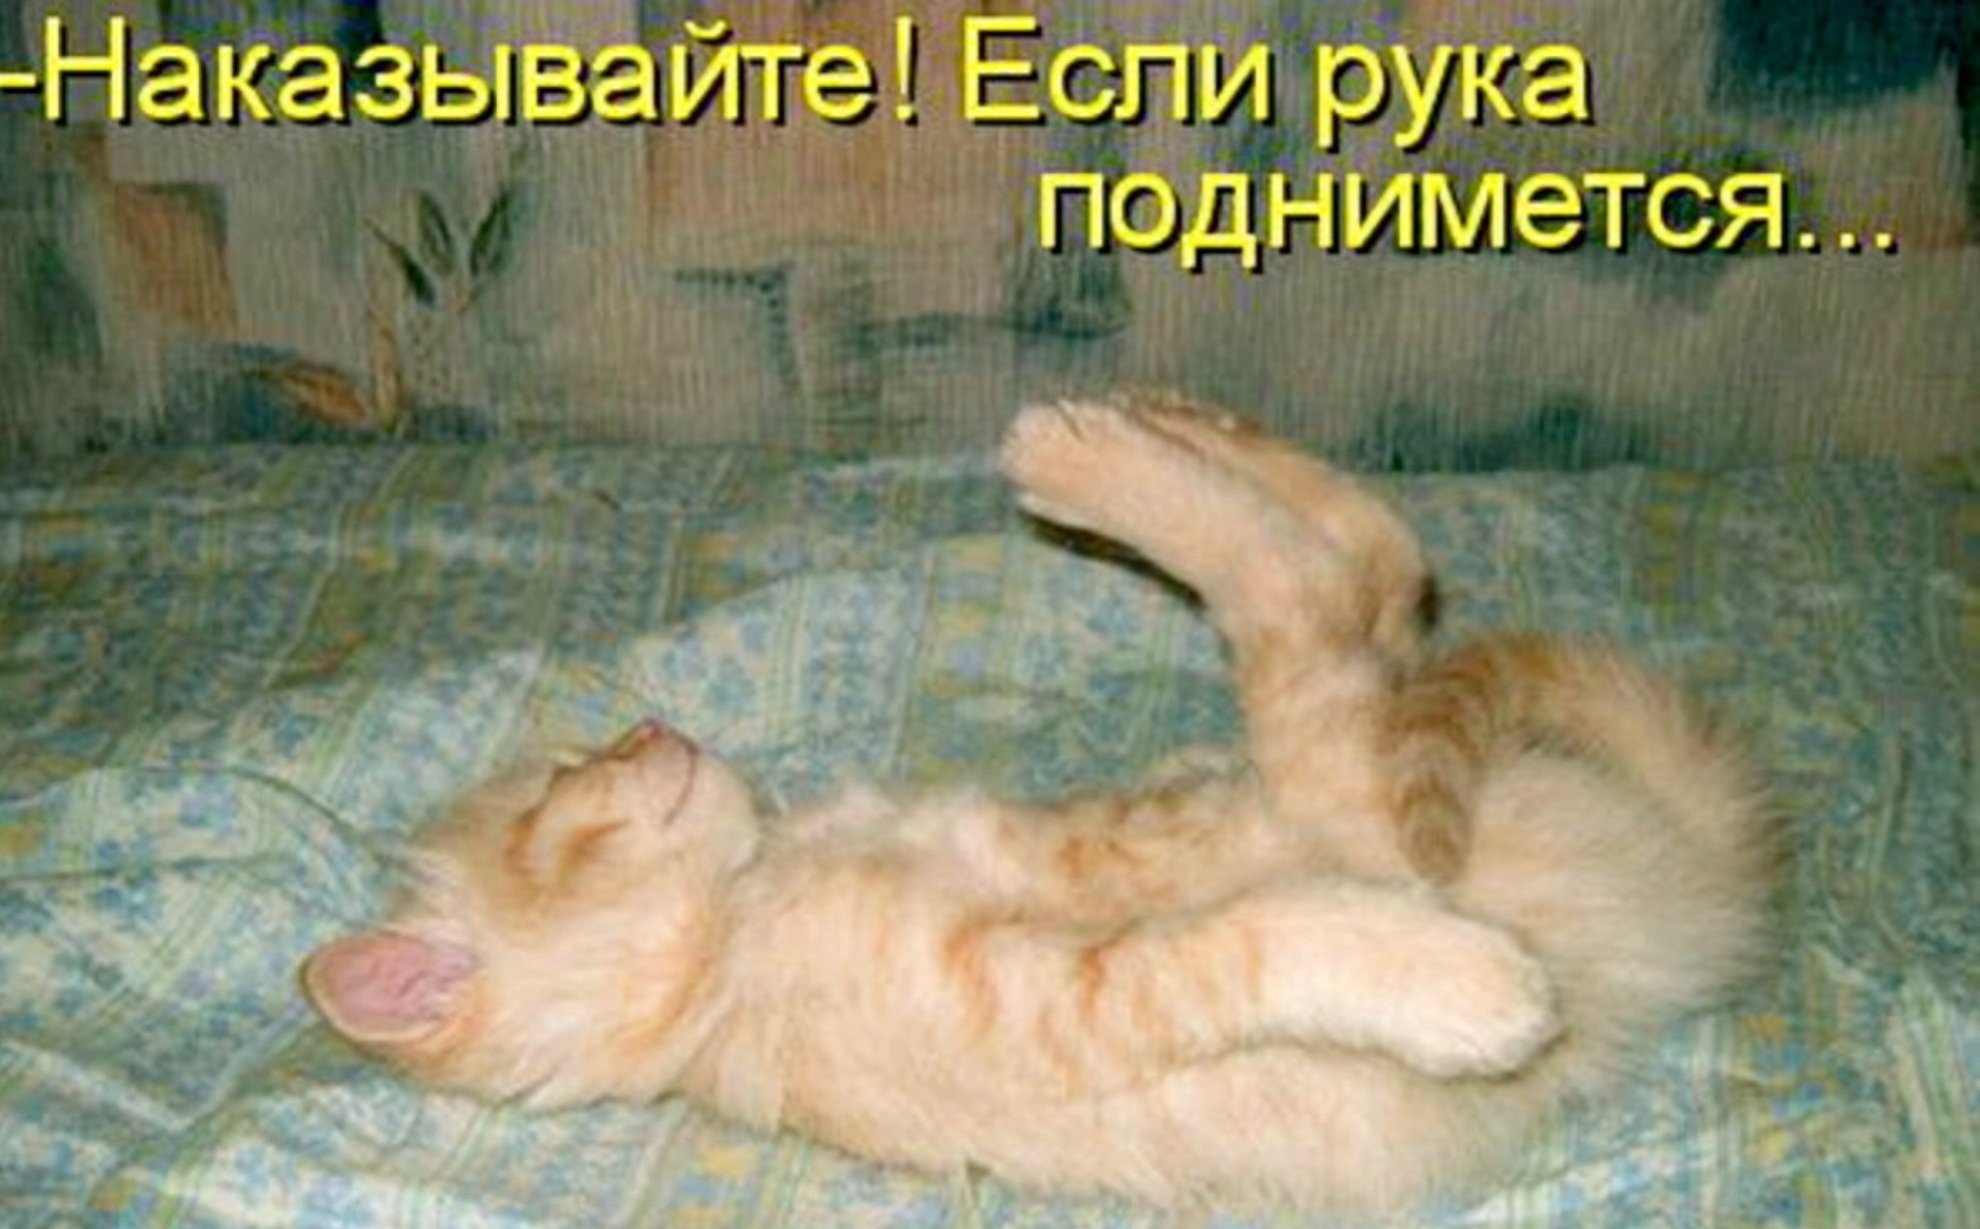 Не уставшая а отдохнувшая. Весёлые картинки с надписями. Смешные картинки про котов с надписями. Смешные картинки с котами и надписями. Наказывайте если рука поднимется.